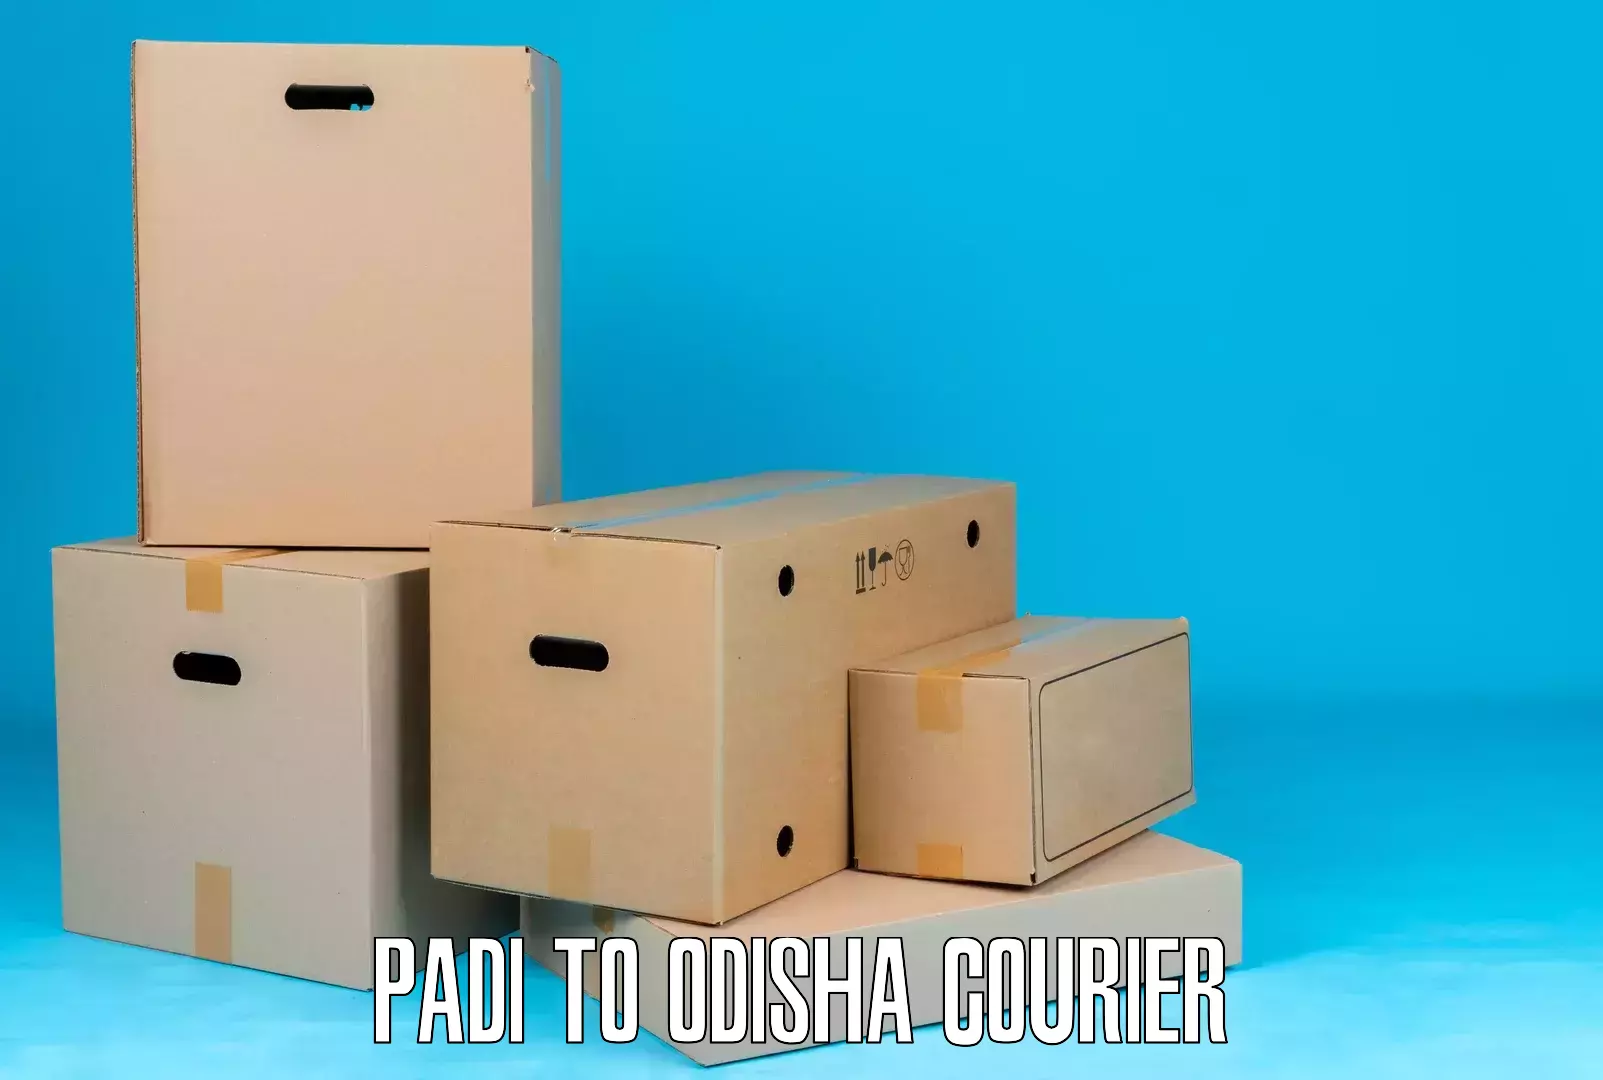 Supply chain delivery Padi to Odisha